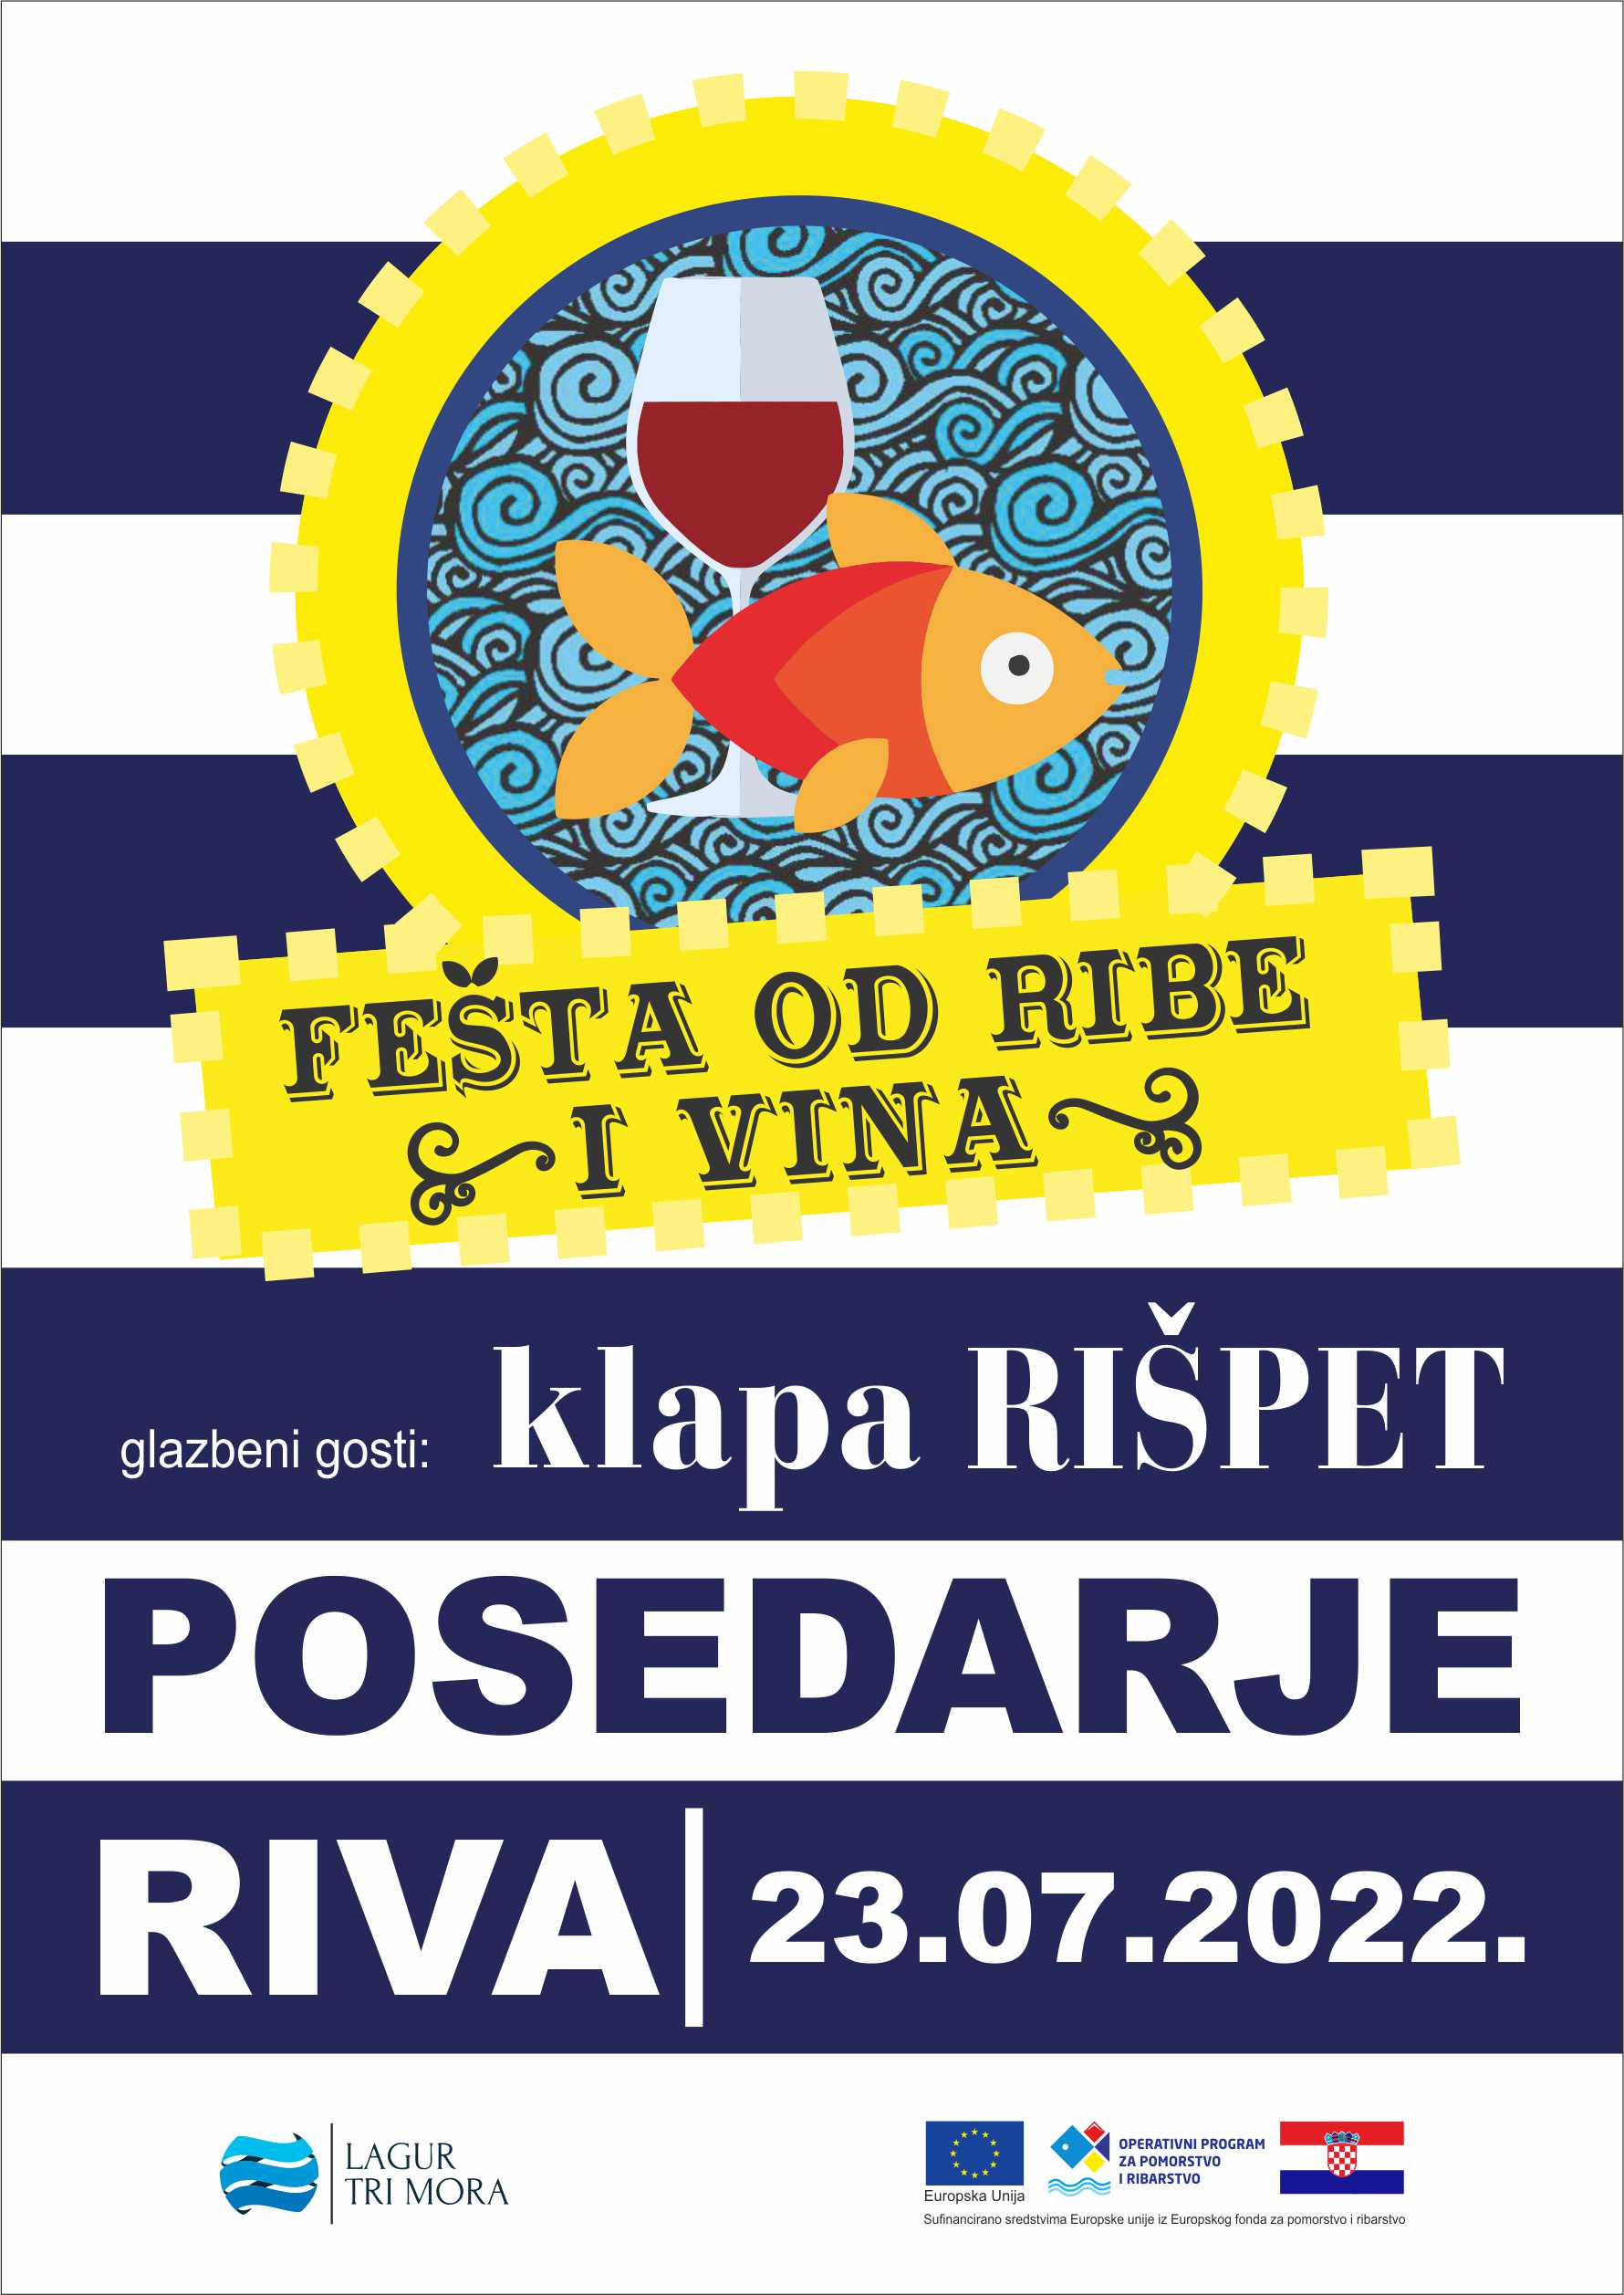 Festa Ribe i vina 2022 Posedarje plakat